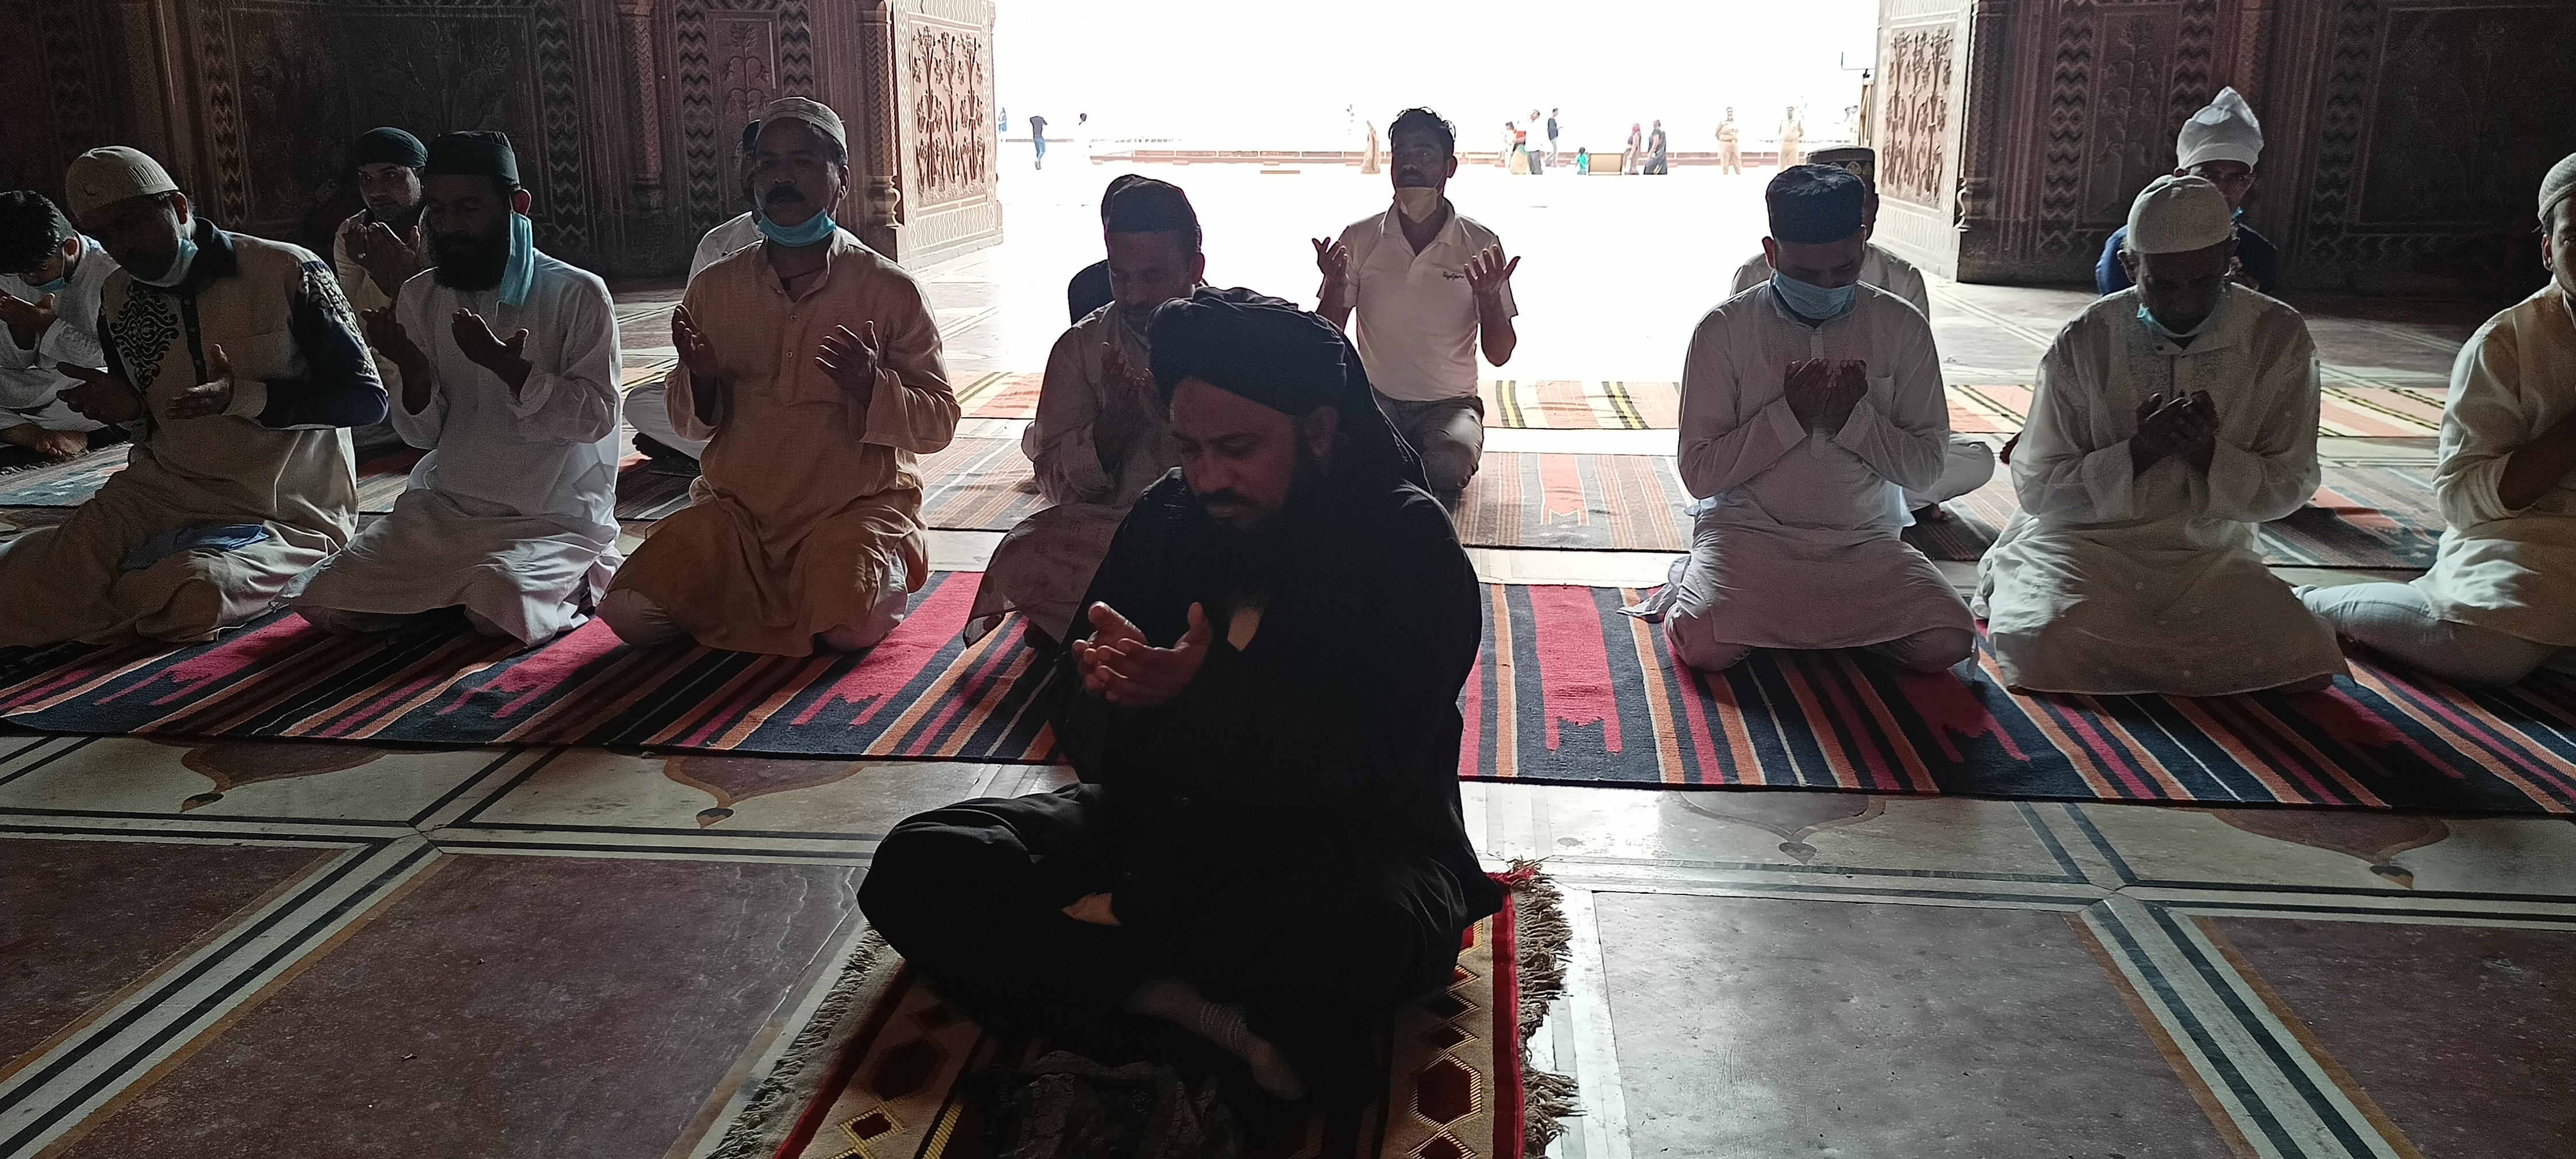 ताजमहल मस्जिद में लोगों ने पढ़ी नमाज.